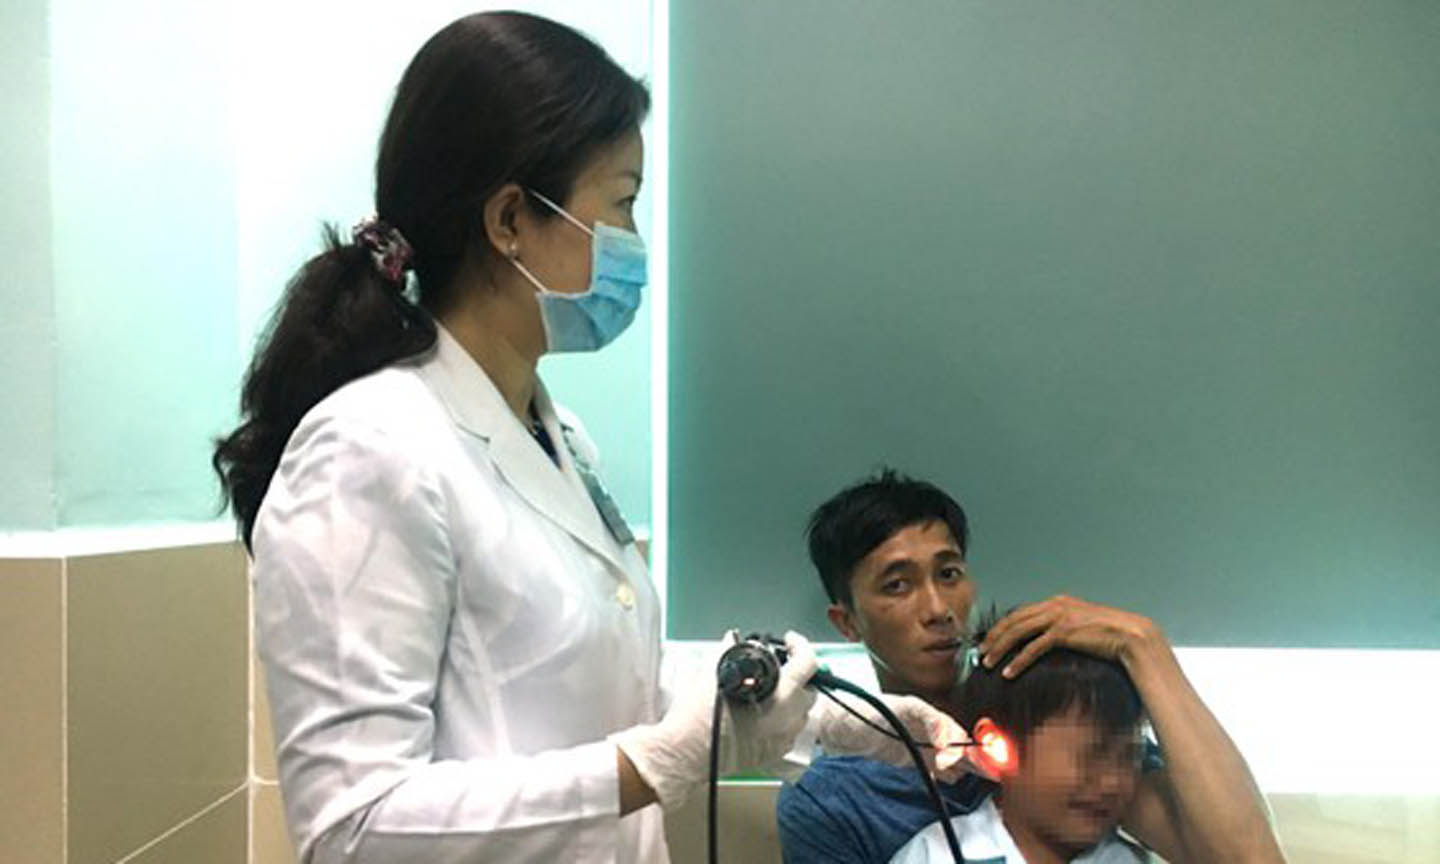 Bác sĩ kiểm tra tai của bệnh nhi T.T.Đ sau khi nội soi gắp được viên pin